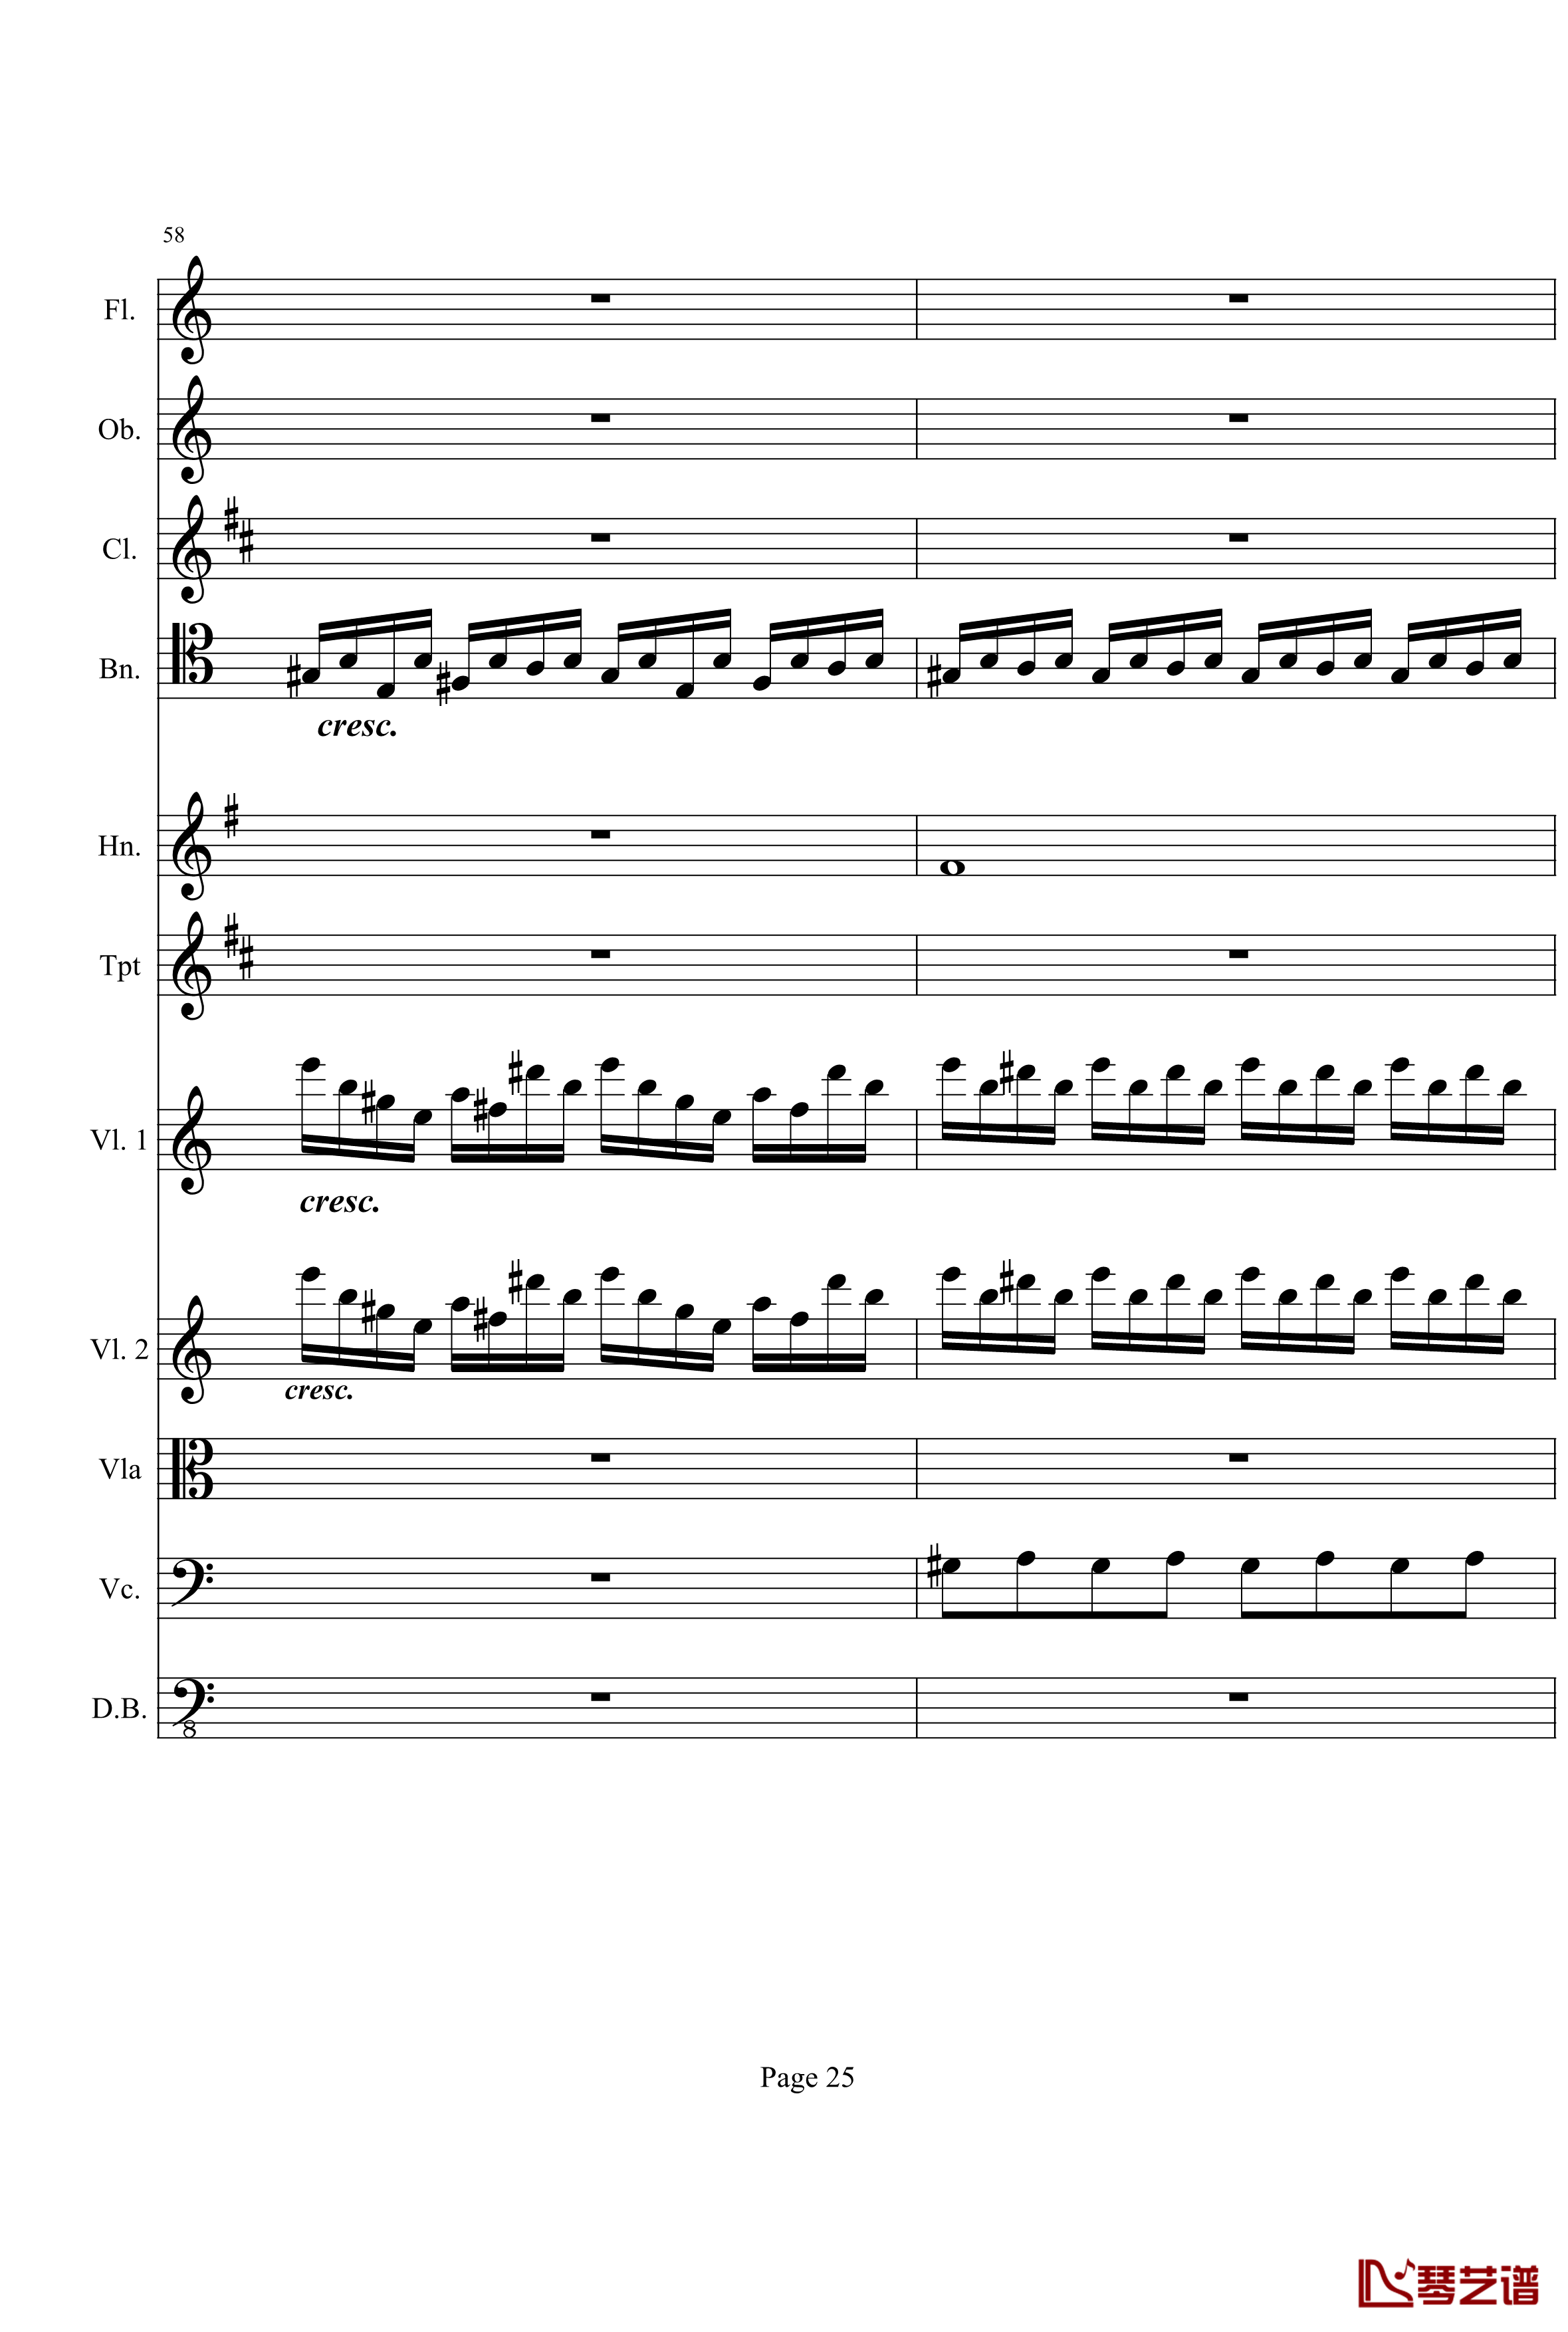 奏鸣曲之交响钢琴谱-第21首-Ⅰ-贝多芬-beethoven25